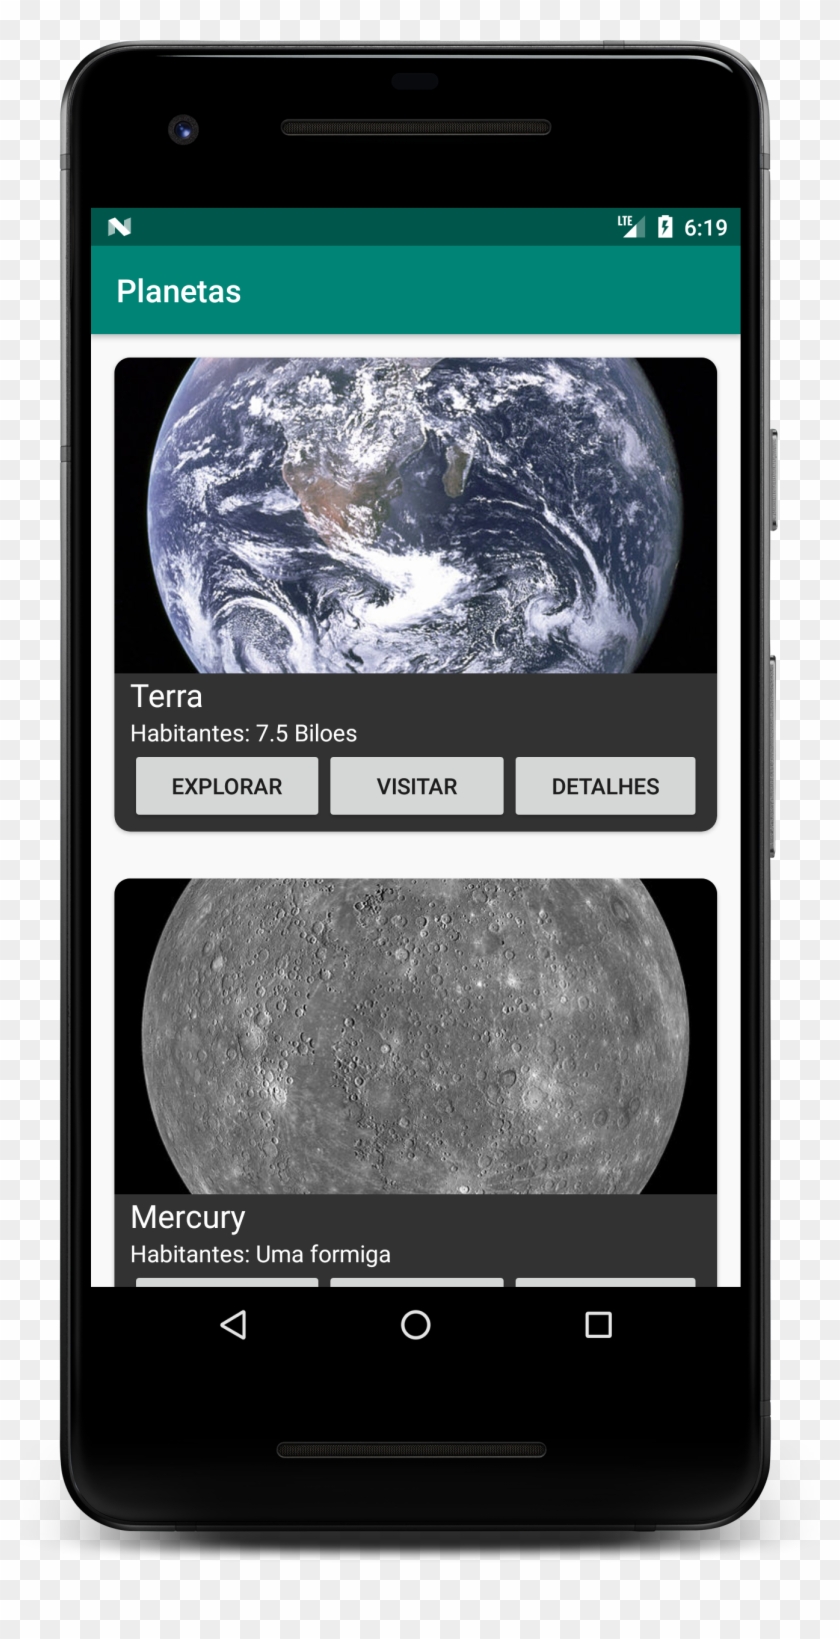 App Criada Para O Curso De Android Para Visionarios - Astronomical Object Clipart